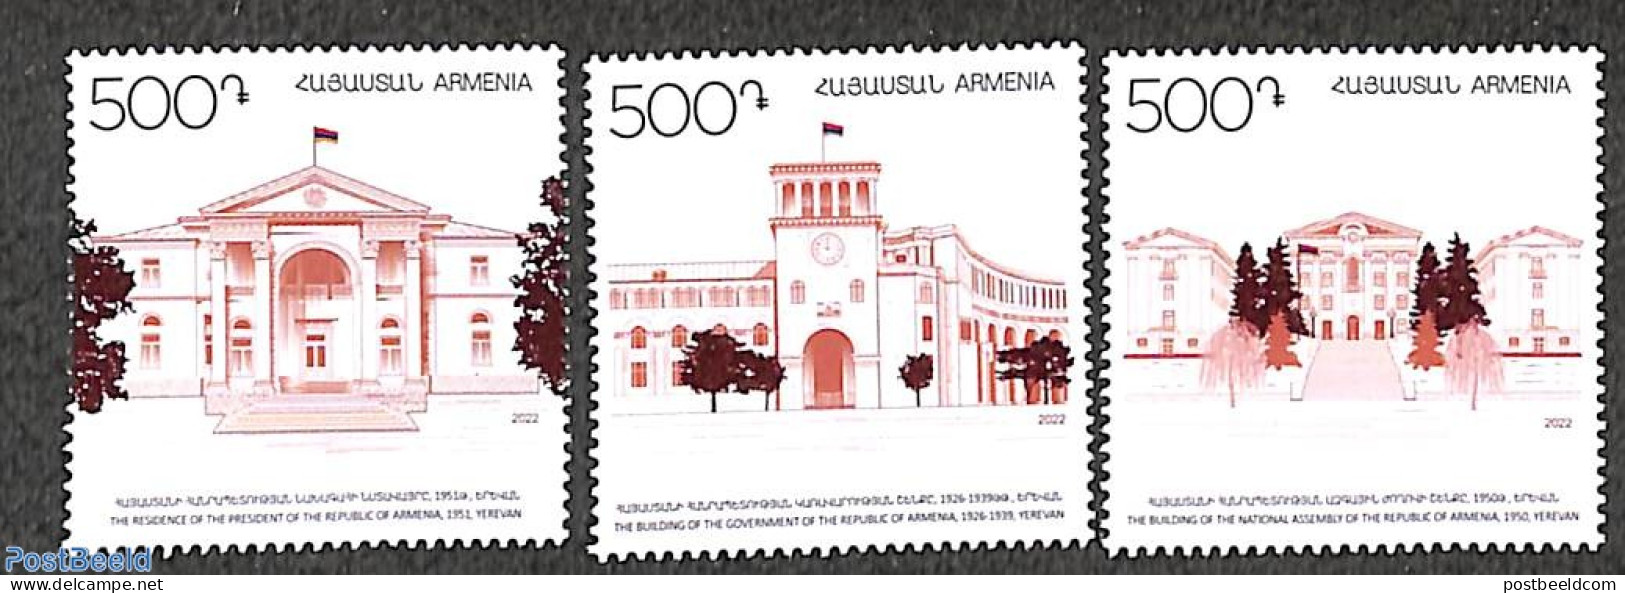 Armenia 2022 Architecture 3v, Mint NH, Art - Architecture - Armenië